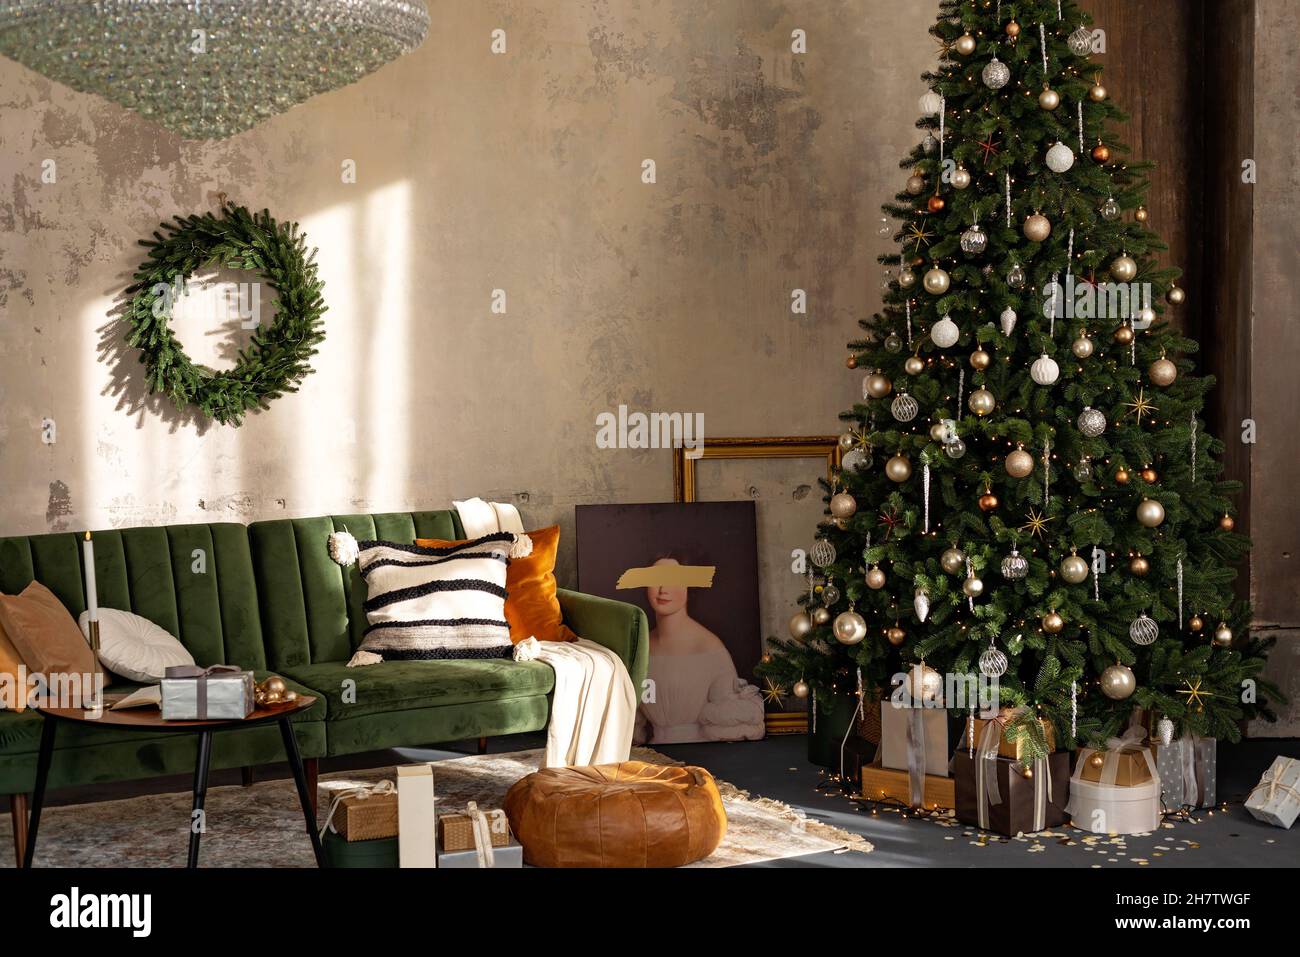 Hintergrund zum neuen Jahr. Weihnachtliche Einrichtung im Loft-Zimmer. Beleuchtung, Kerzen und heiße Innenbeleuchtung, Girlanden in der Nähe des Weihnachtsbaums mit Geschenken. Softselect Stockfoto